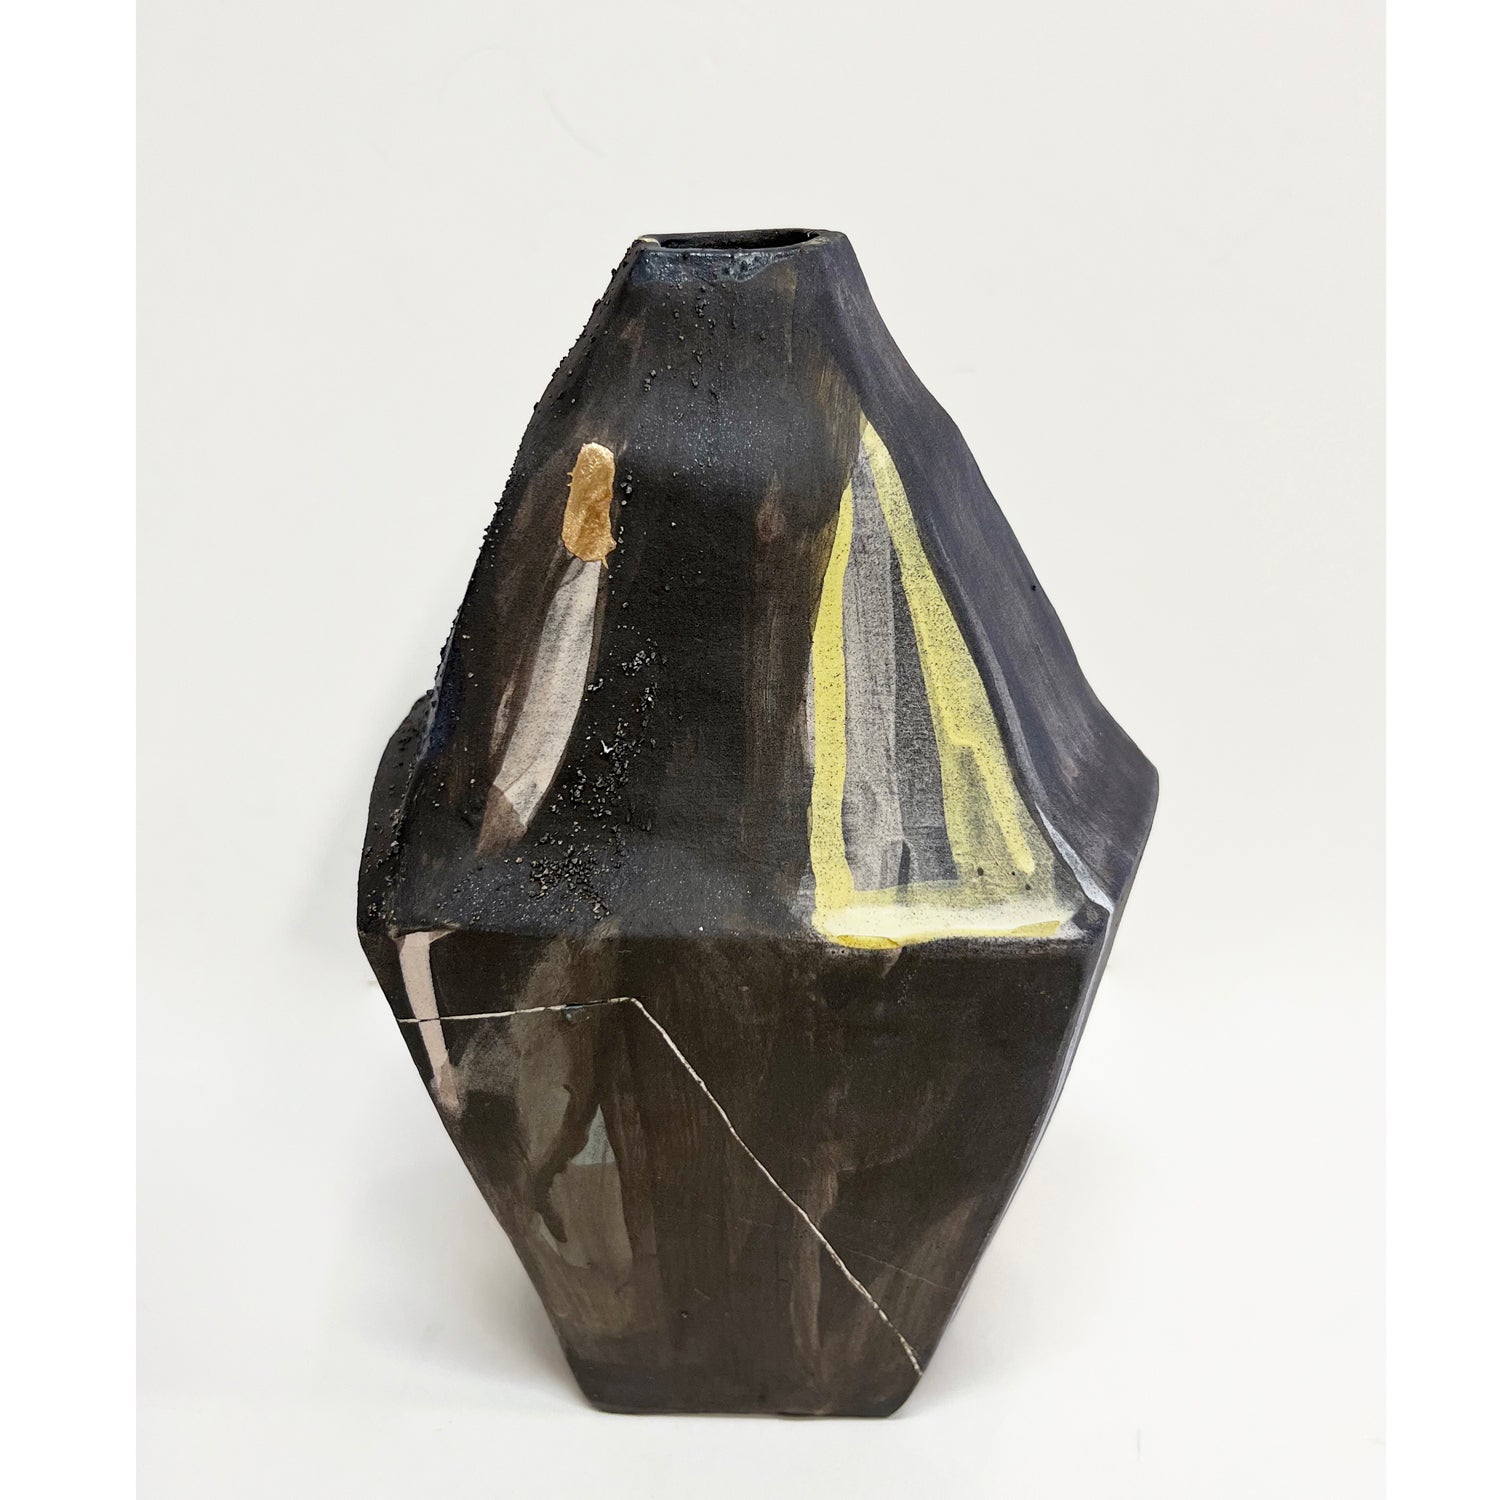 Mariana Bolanos Inclan - Small Black Vase